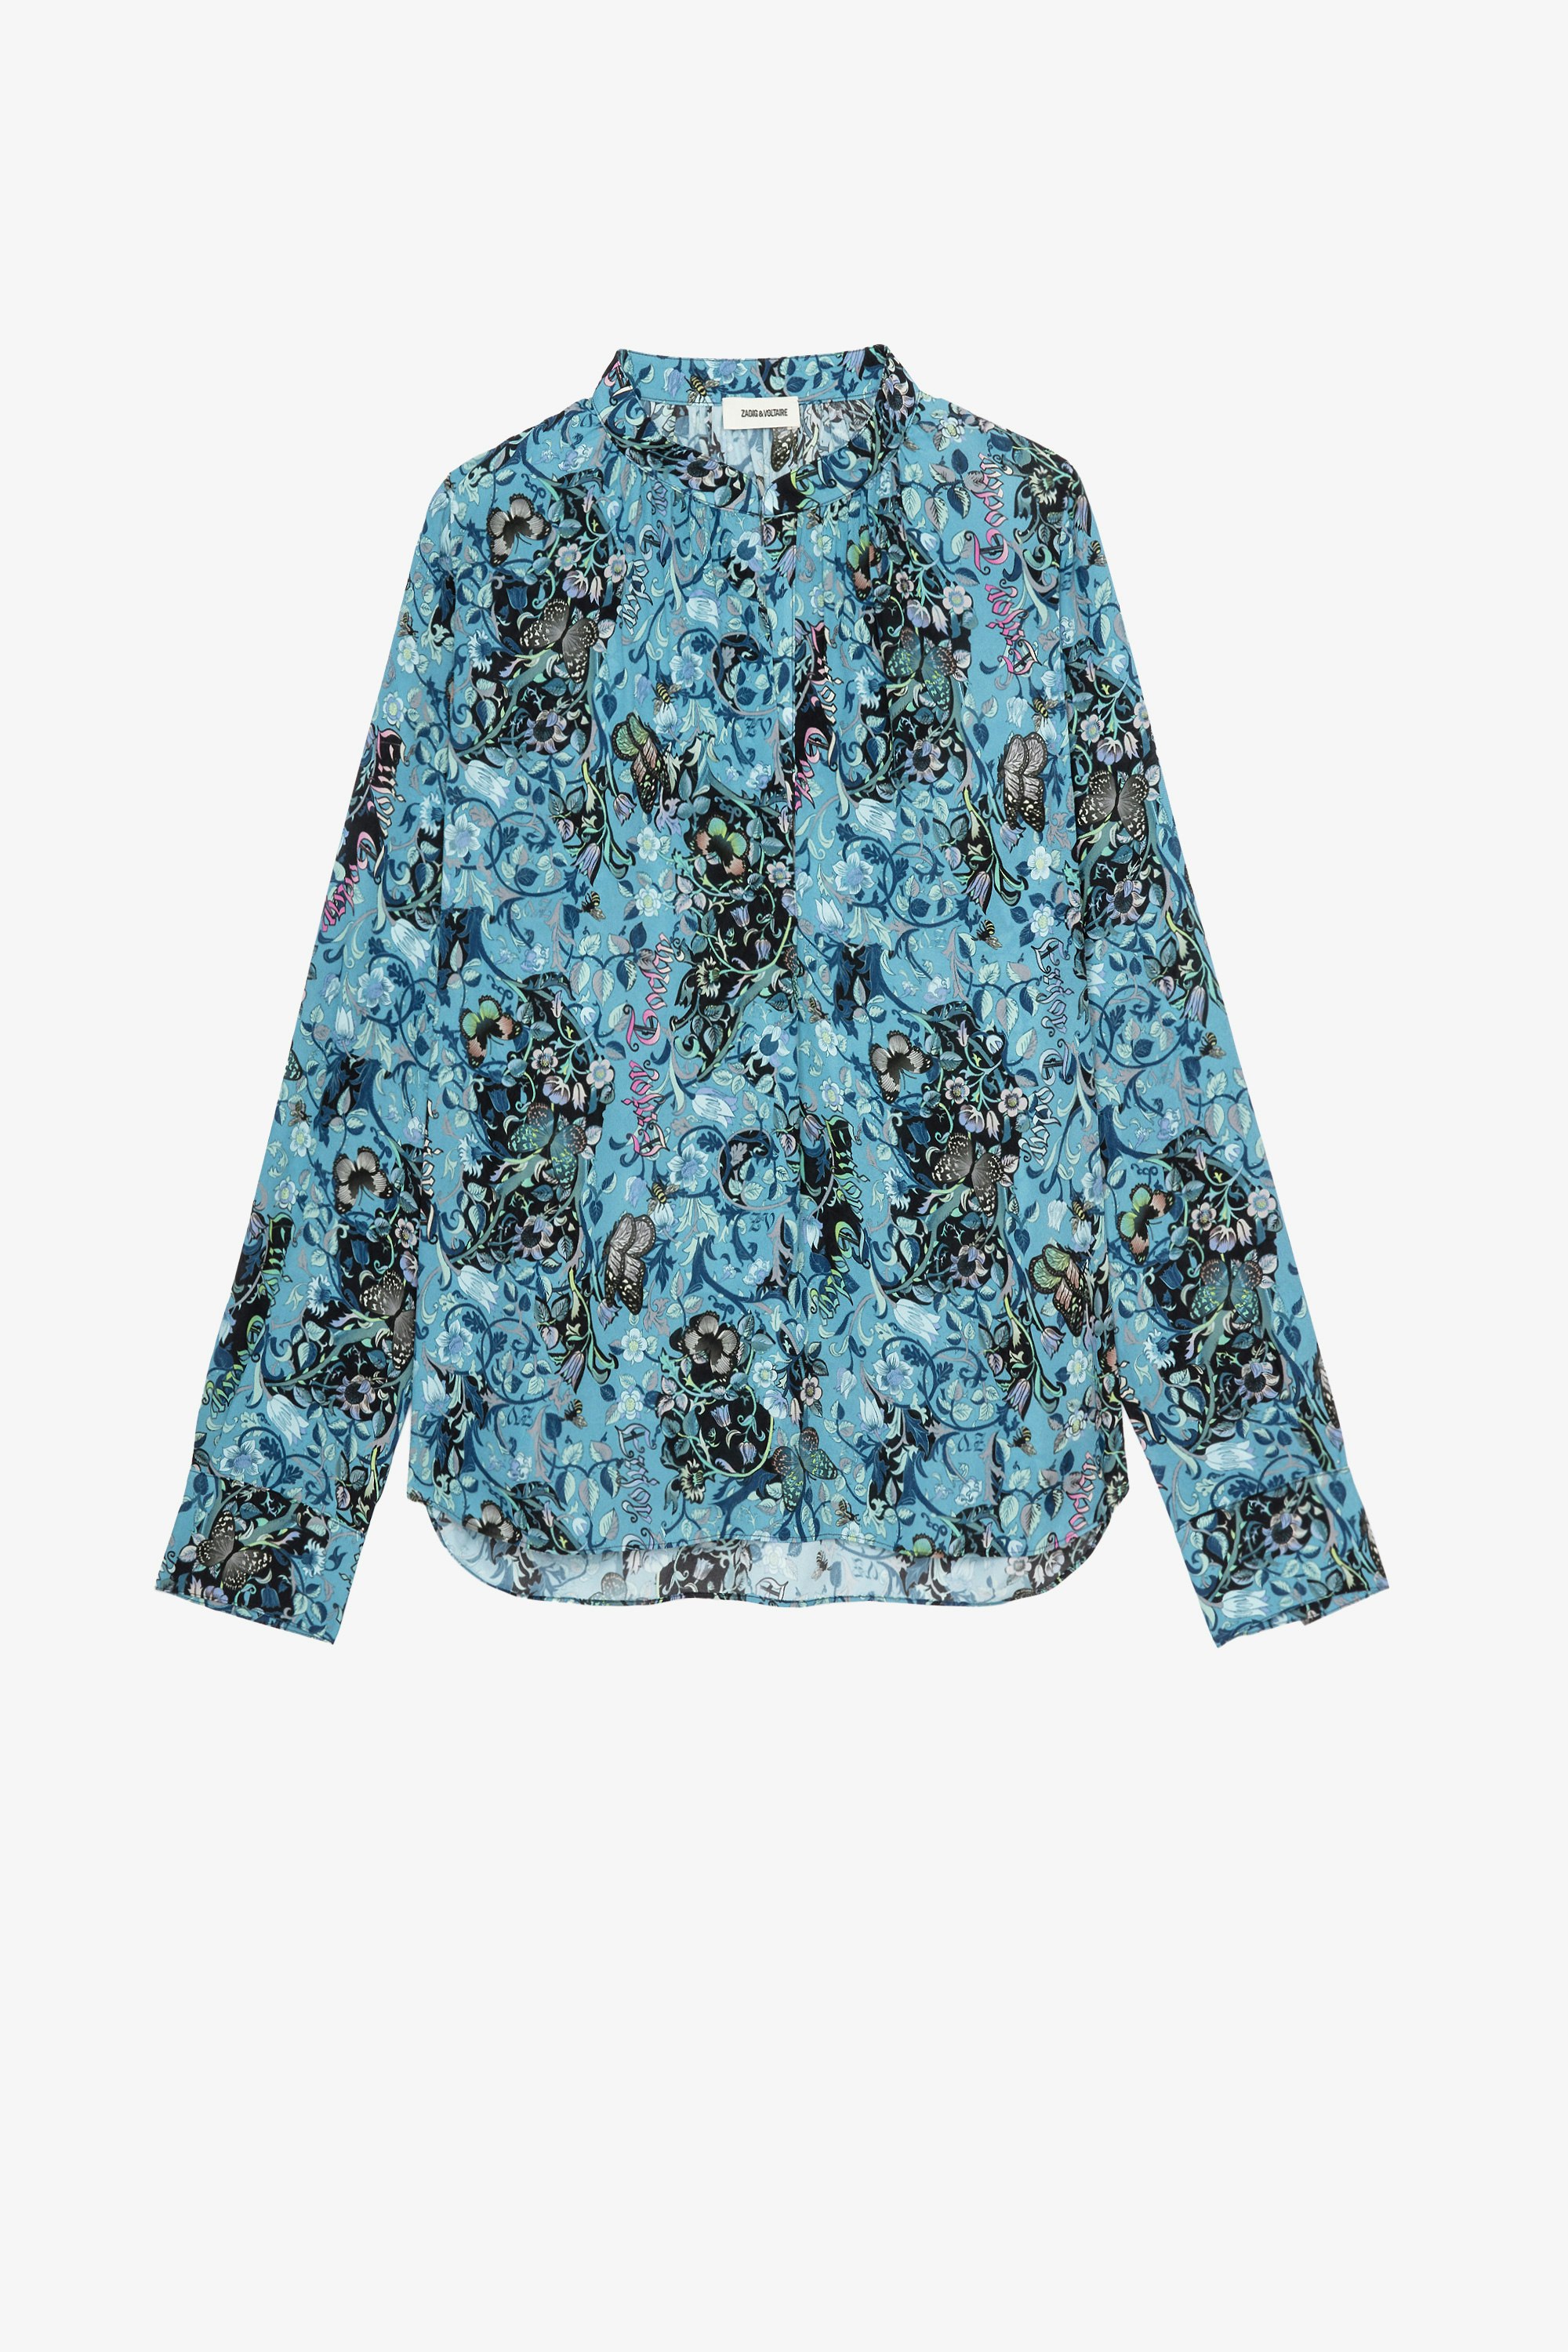 Camicia Tink Bohemian Camicia in raso blu con stampa floreale donna 